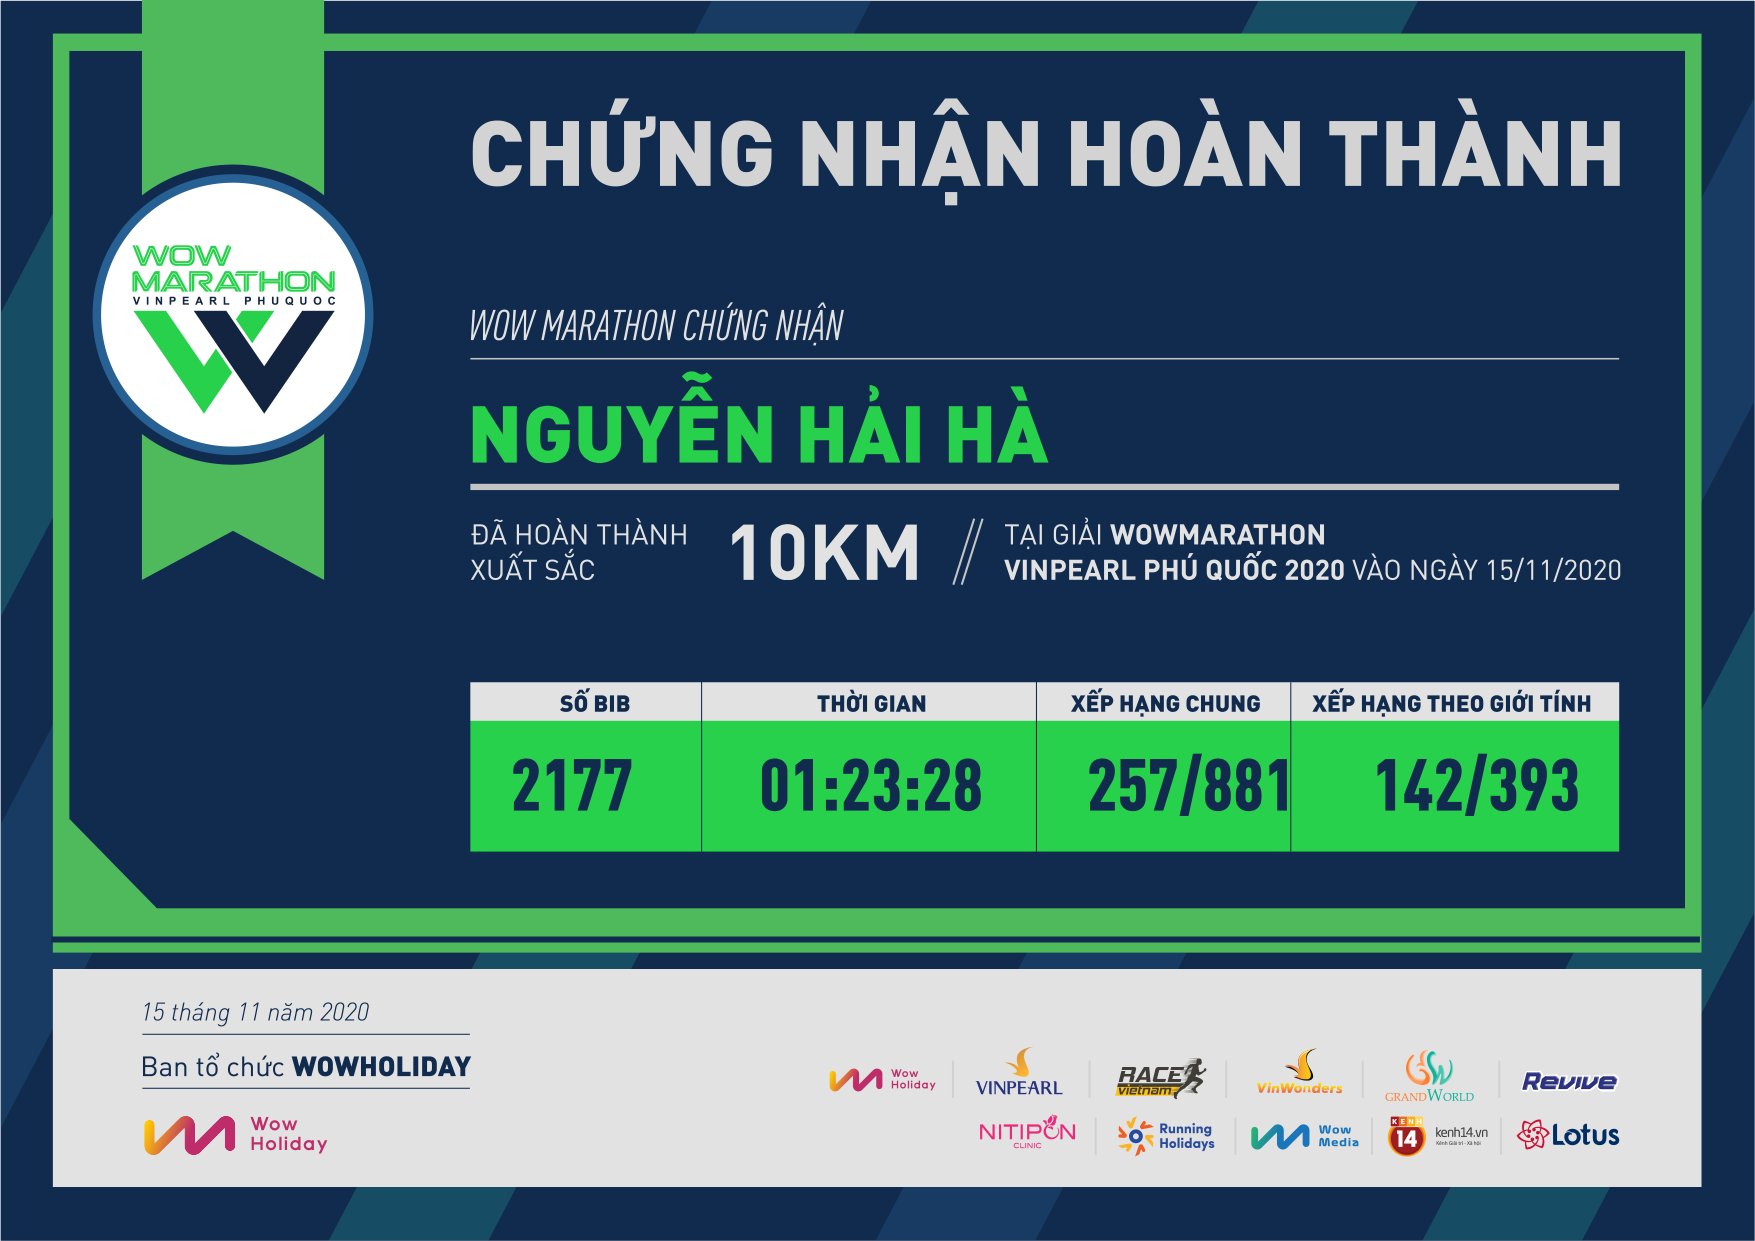 2177 - Nguyễn Hải Hà